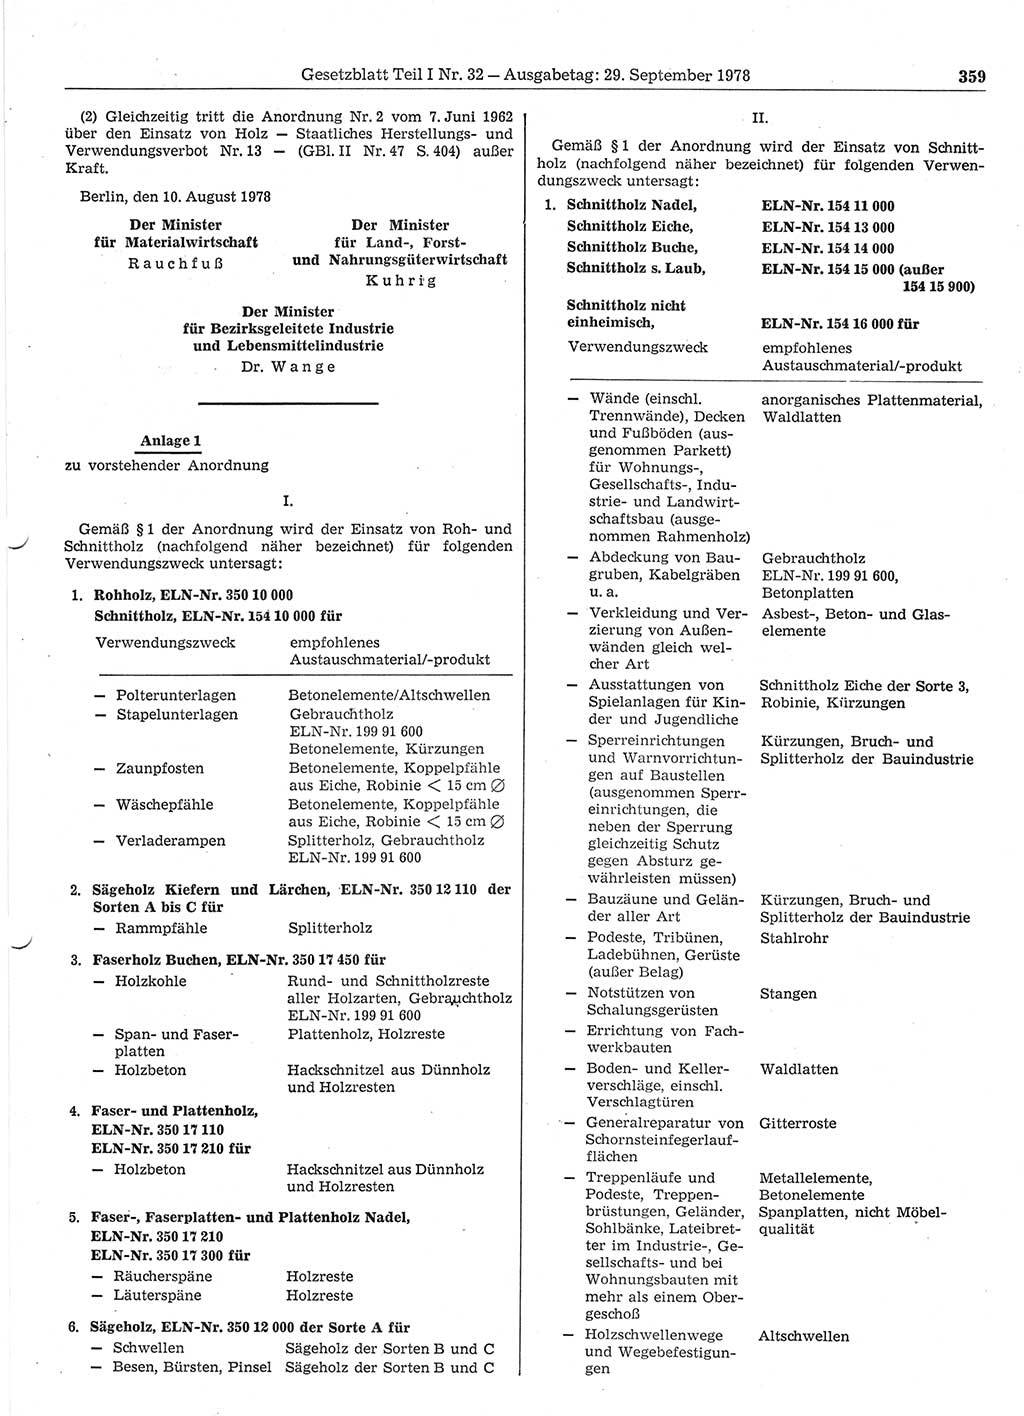 Gesetzblatt (GBl.) der Deutschen Demokratischen Republik (DDR) Teil Ⅰ 1978, Seite 359 (GBl. DDR Ⅰ 1978, S. 359)